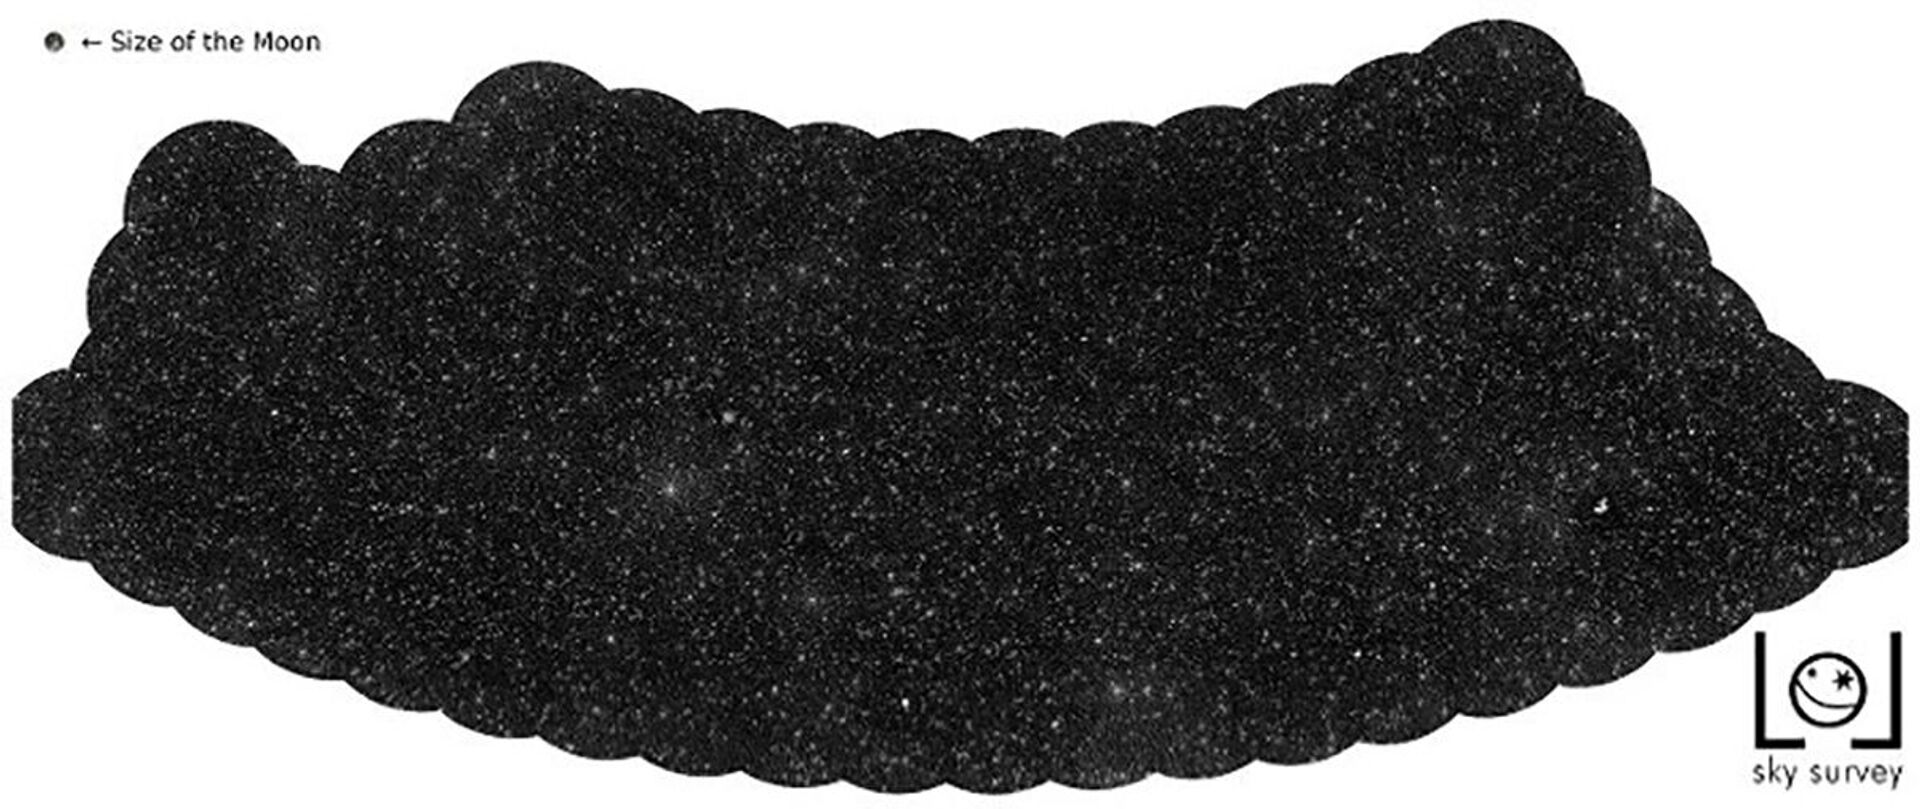 Cientistas mapeiam milhares de buracos negros facilmente confundidos com estrelas (FOTO) - Sputnik Brasil, 1920, 22.02.2021